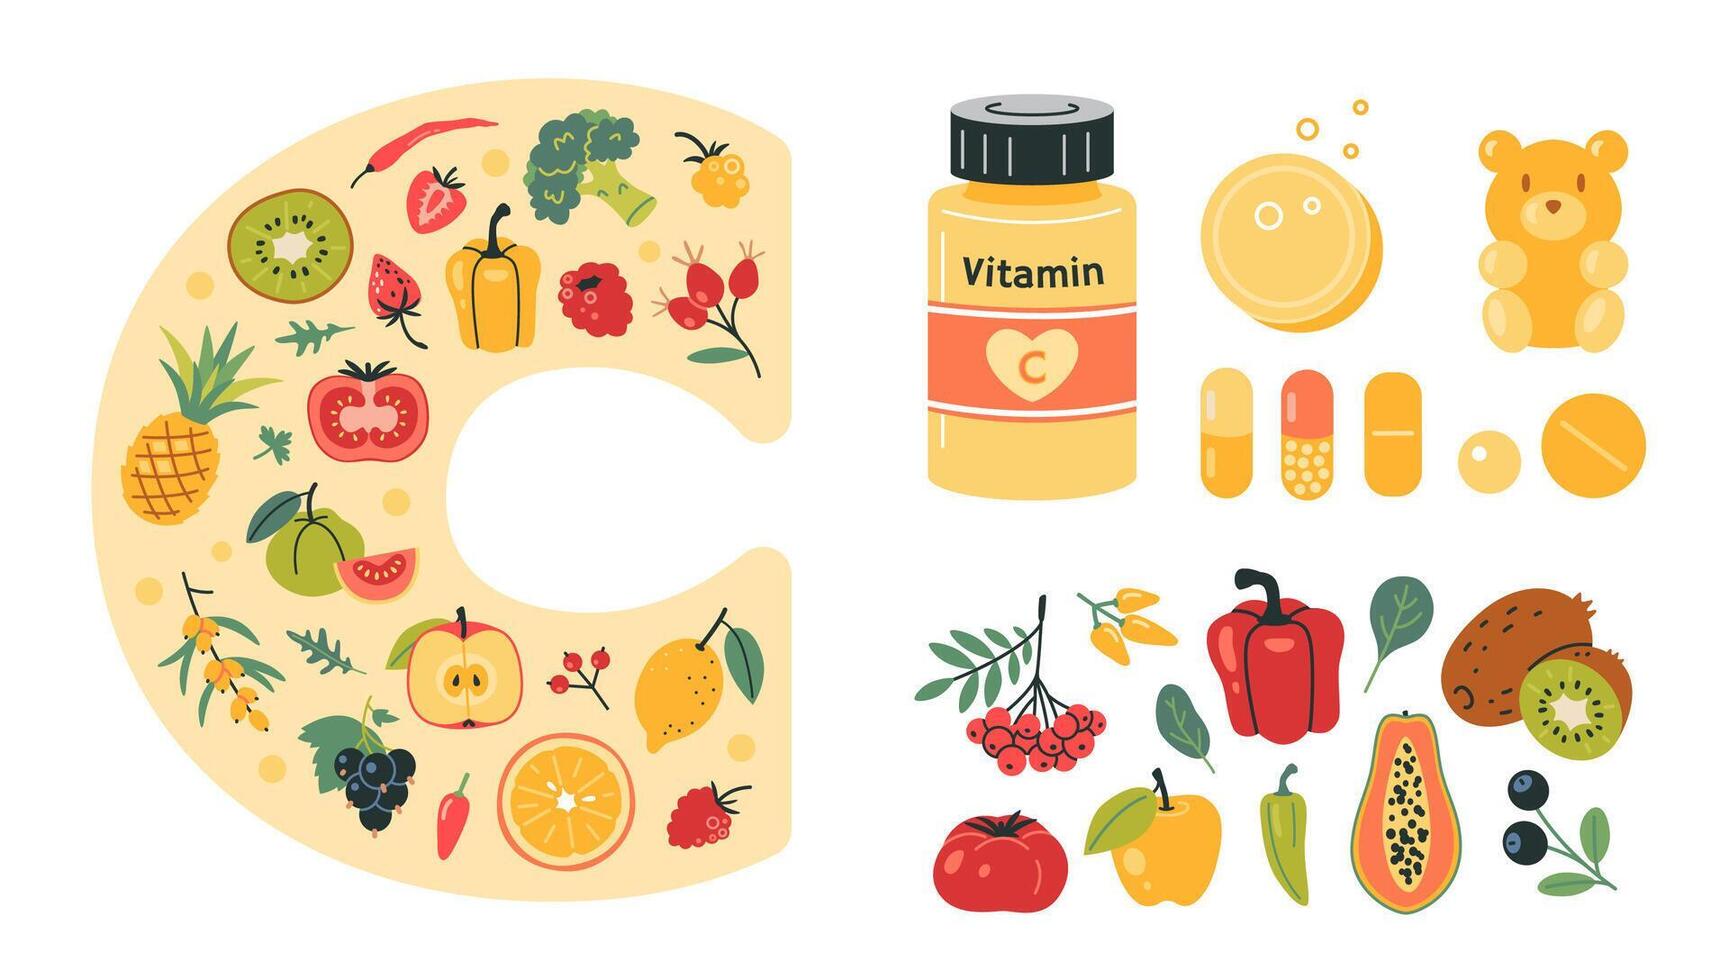 vitamine c sources ensemble avec nourriture riches dans il, comprimés et gélules. des fruits, baies, des légumes et pharmacie des produits. Naturel antioxydant et immunitaire soutien. isolé dessin animé illustration, plat vecteur